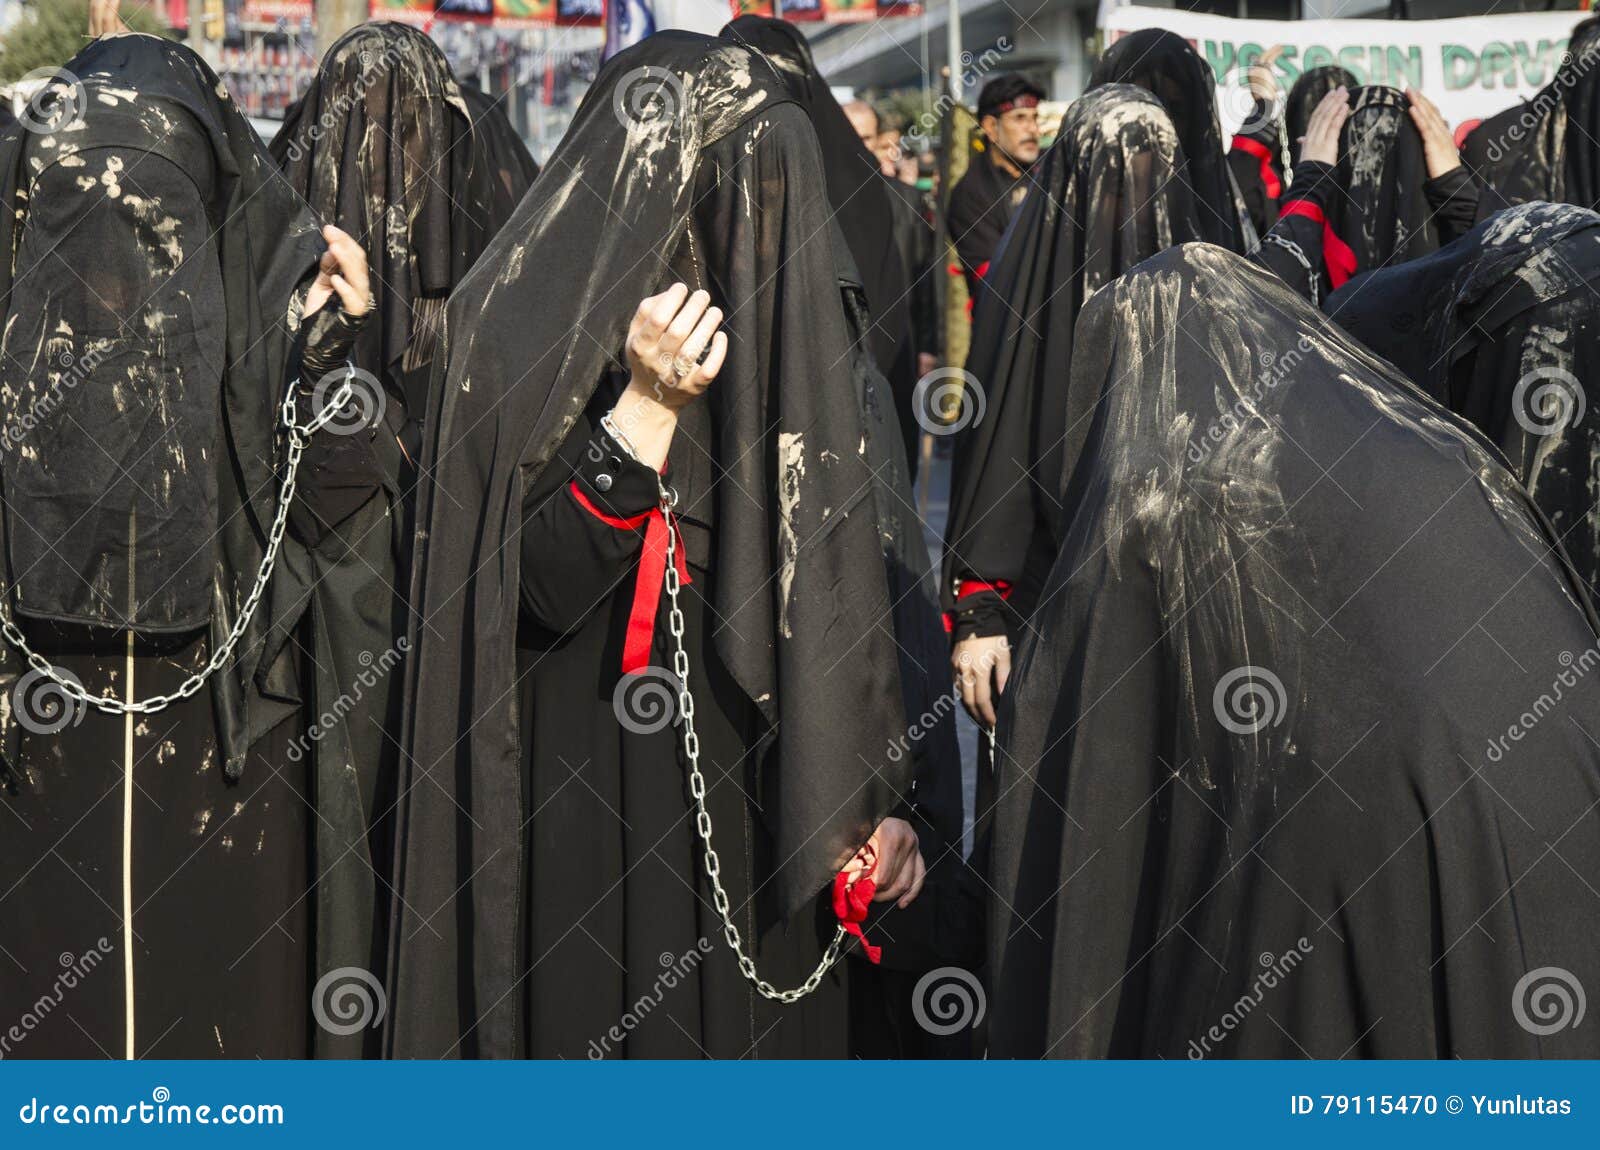 Что нельзя во время траура. Одежда для похорон женщины мусульманки. Мусульманские платья траурные. Мусульманские похороны одежда.